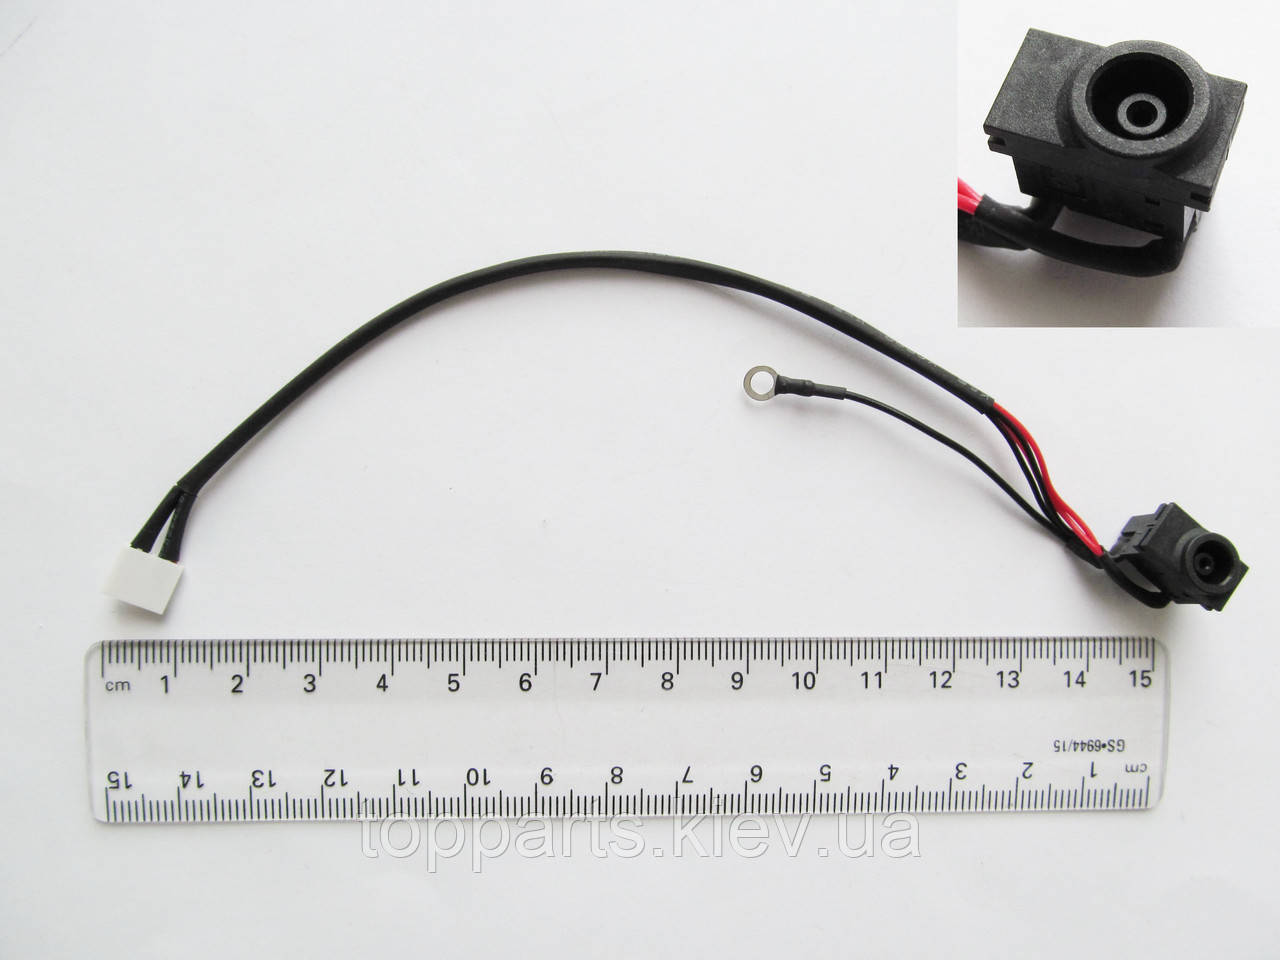 Роз'єм живлення з кабелем для Samsung PJ324 (5.5 mm x 3.0 mm + center pin), 4-pin, 17 см